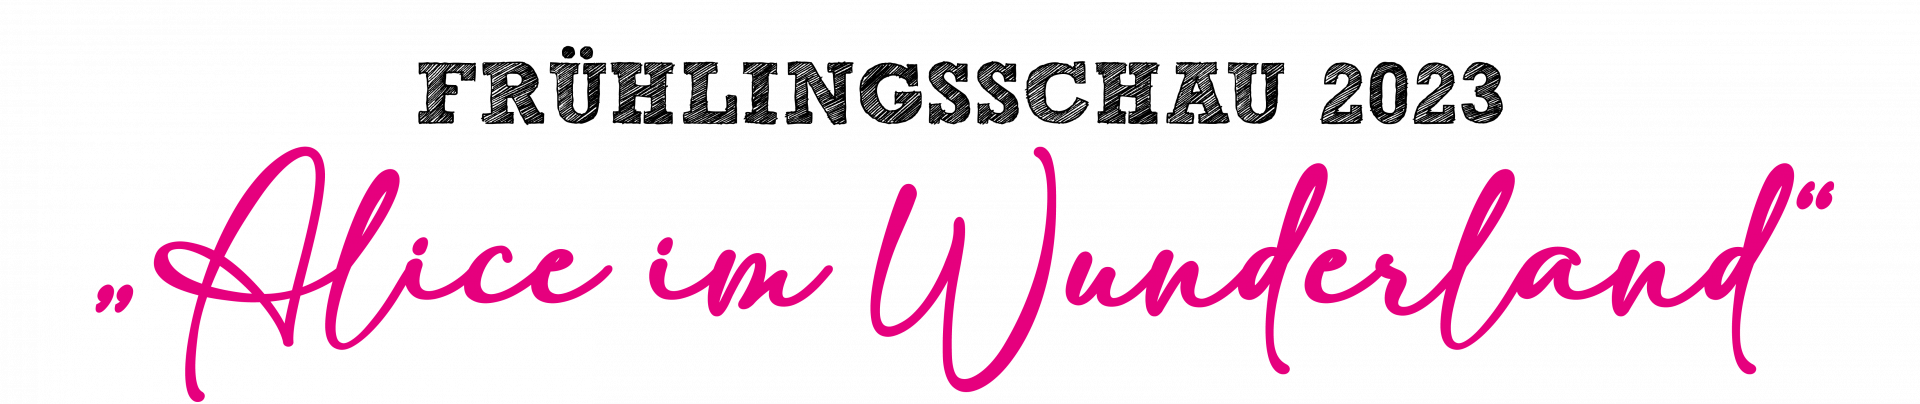 Logo der Frühlingsschau auf dem Krewelshof mit pinker Schrift "Alice im Wunderland".